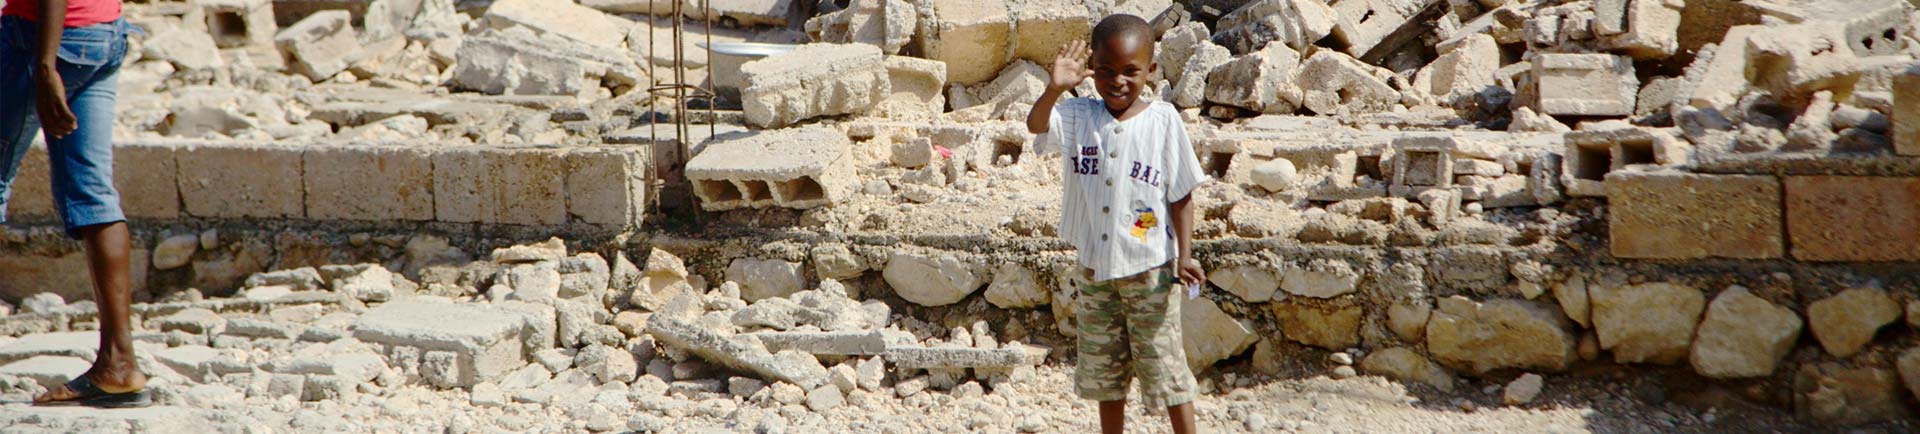 Haiti nach dem Beben: Ein Staat ohne Macht